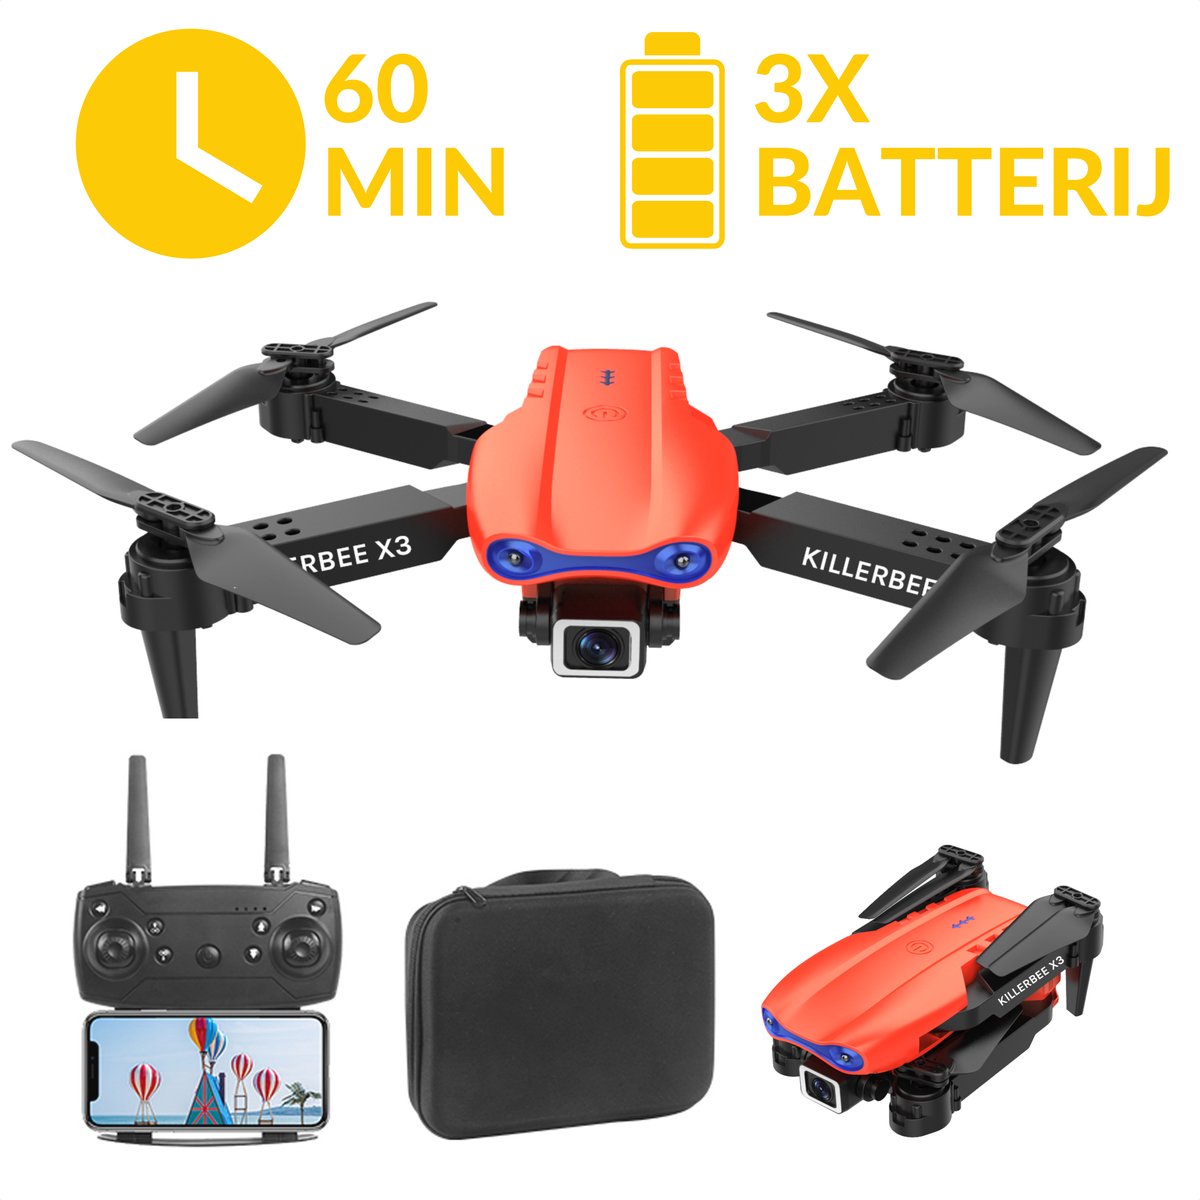 Killerbee X3 Skyhawk Oranje - Quad Drone met camera voor buiten en binnen - Drone voor kinderen en volwassenen - Ultra fly more combo met 60 minuten vliegtijd - inclusief gratis cursus- inclusief opbergtas en 3 accu's.